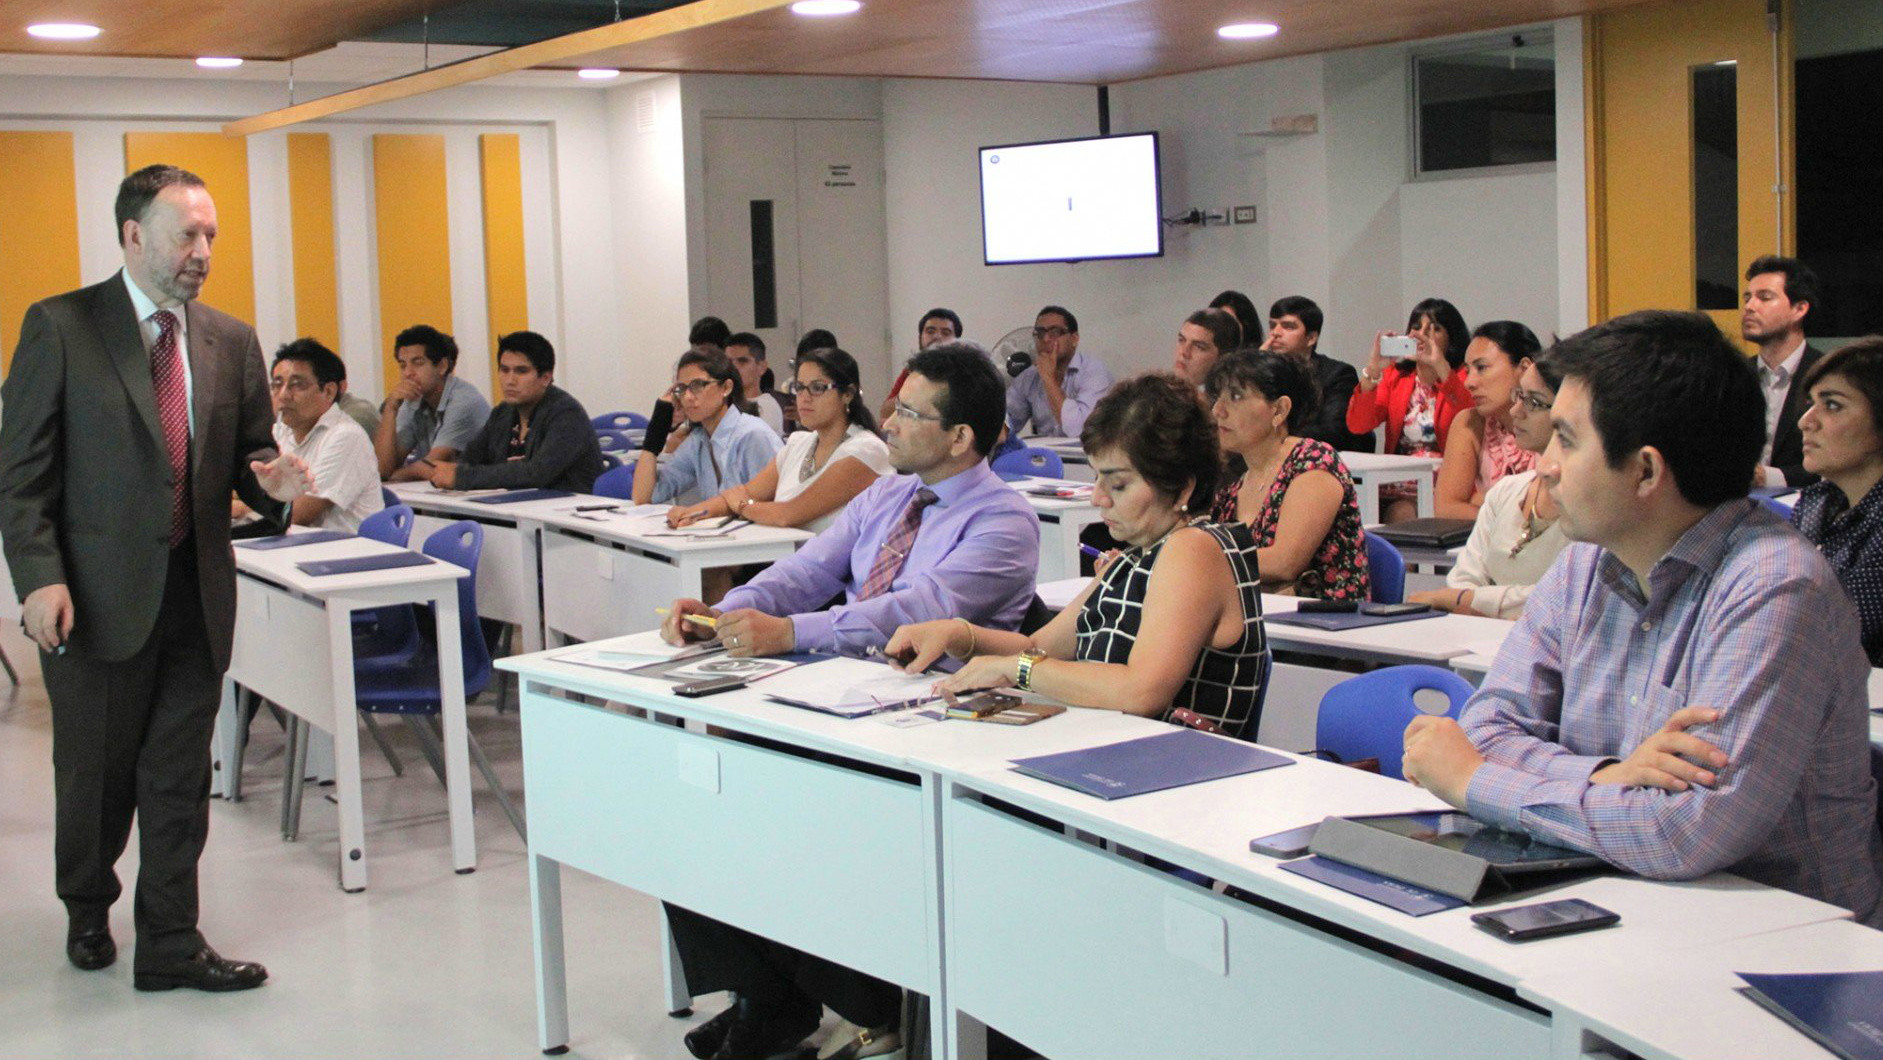 La Oficina de Alumni del Campus Lima inició las 'Sesiones de Continuidad' con el tema 'Riesgo Reputacional'. En ella se expuso la importancia de una buena gestión en las empresas.